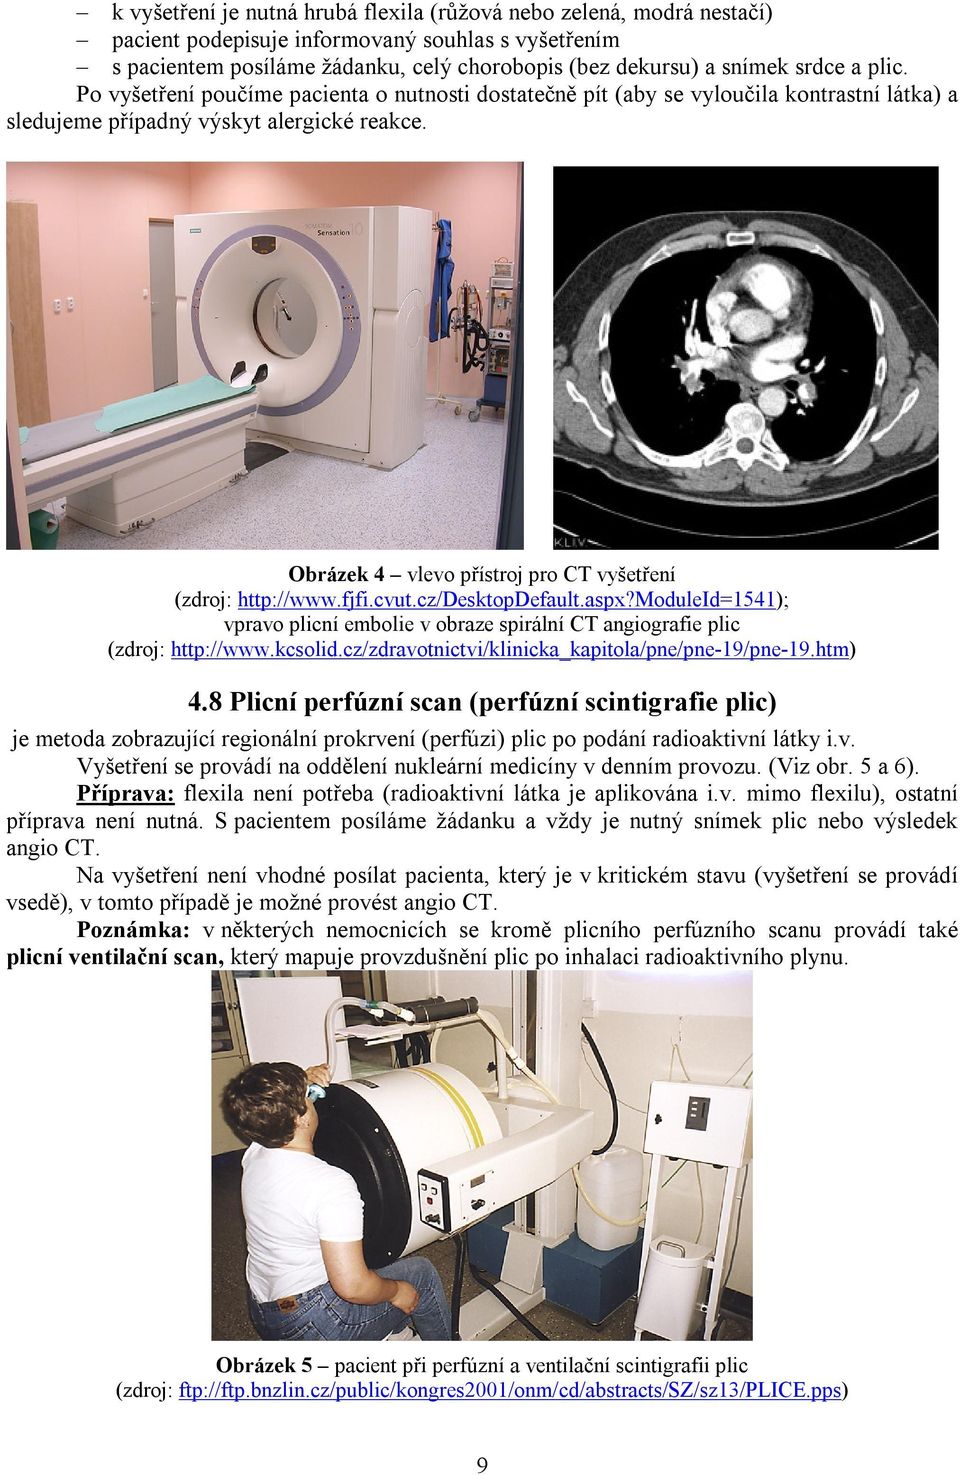 Obrázek 4 vlevo přístroj pro CT vyšetření (zdroj: http://www.fjfi.cvut.cz/desktopdefault.aspx?moduleid=1541); vpravo plicní embolie v obraze spirální CT angiografie plic (zdroj: http://www.kcsolid.